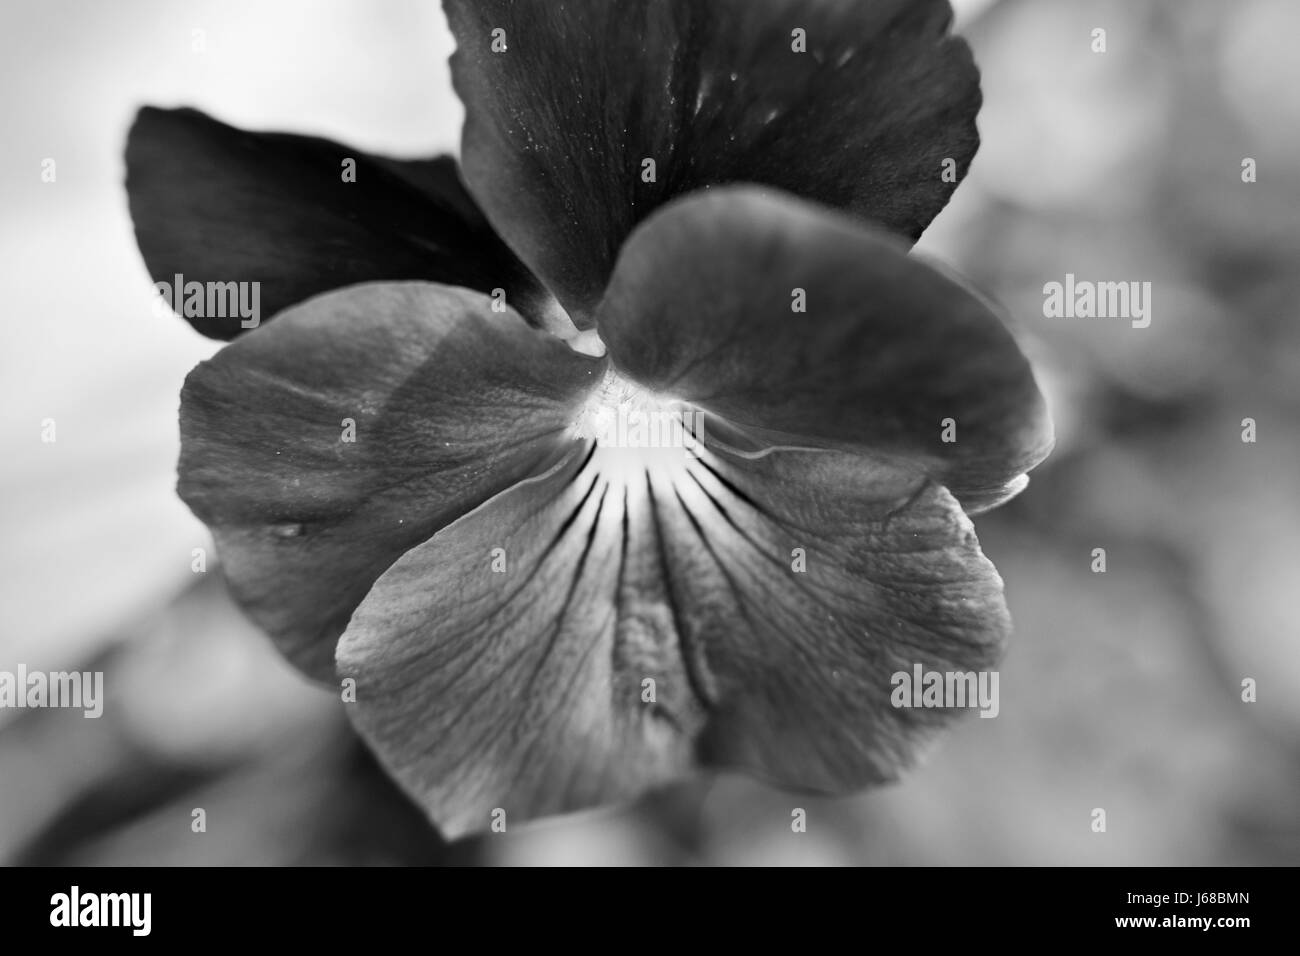 Viola himmlischen Starry Night Flower in schwarz / weiß Stockfoto